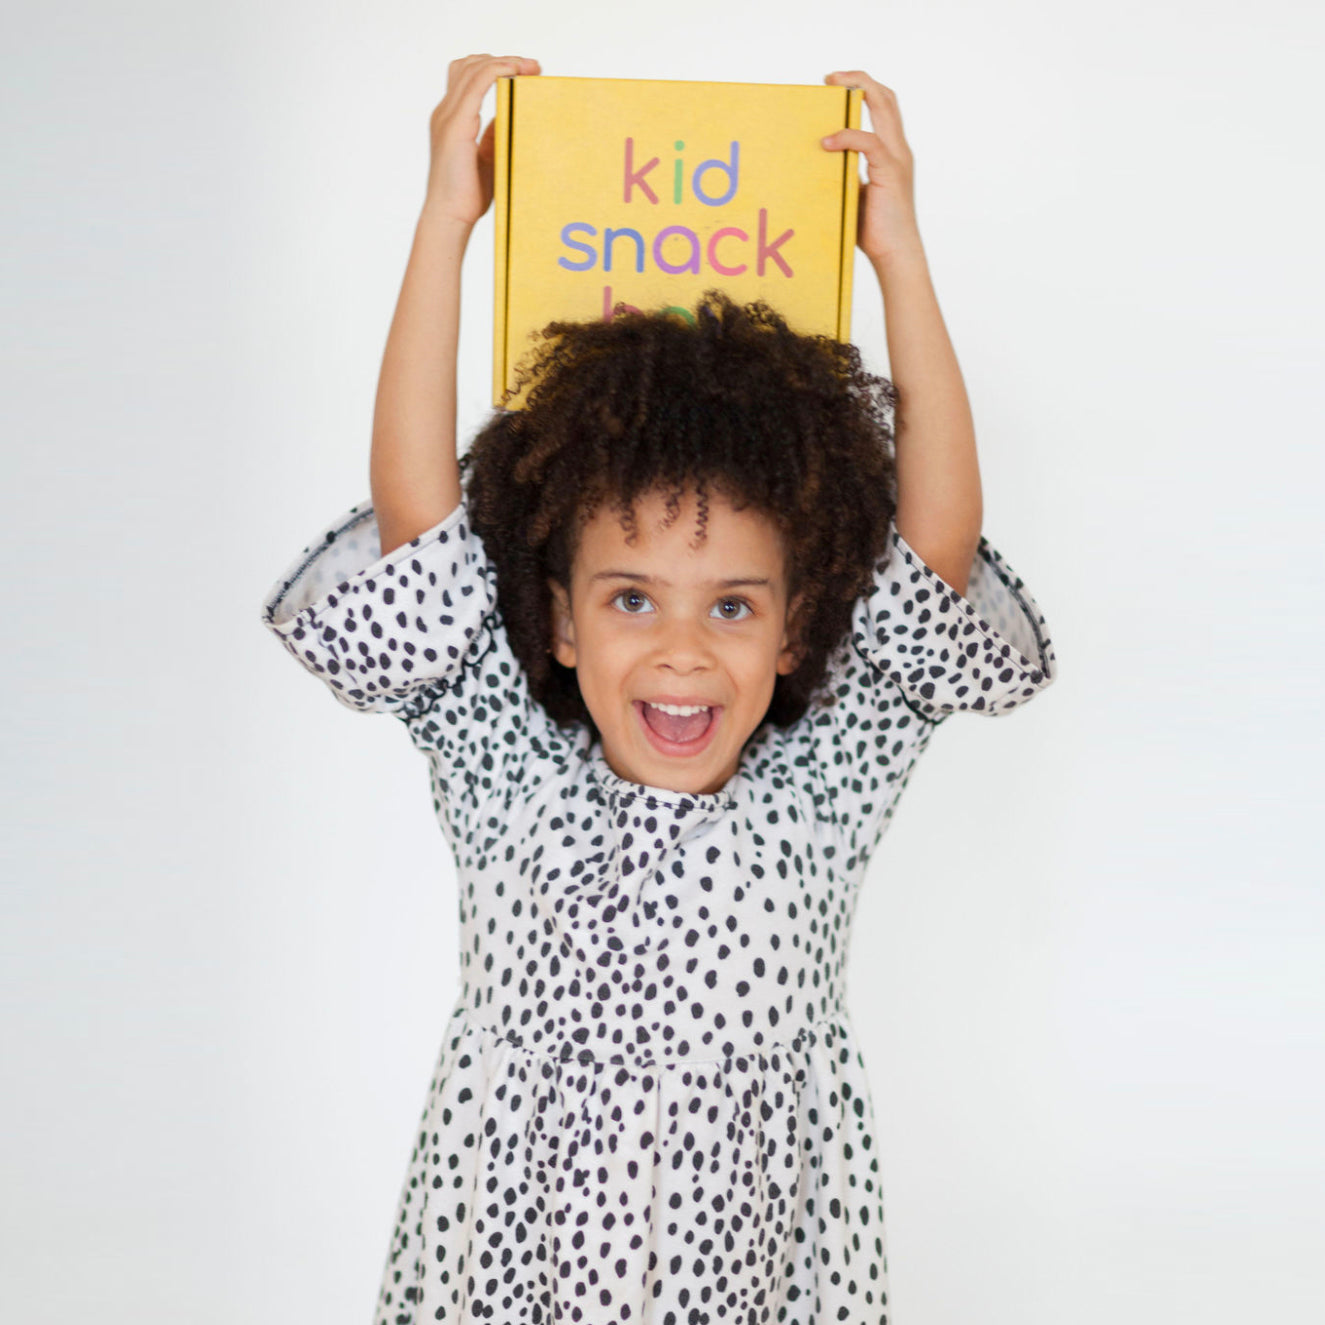 Kid Snack Box – kidsnackbox